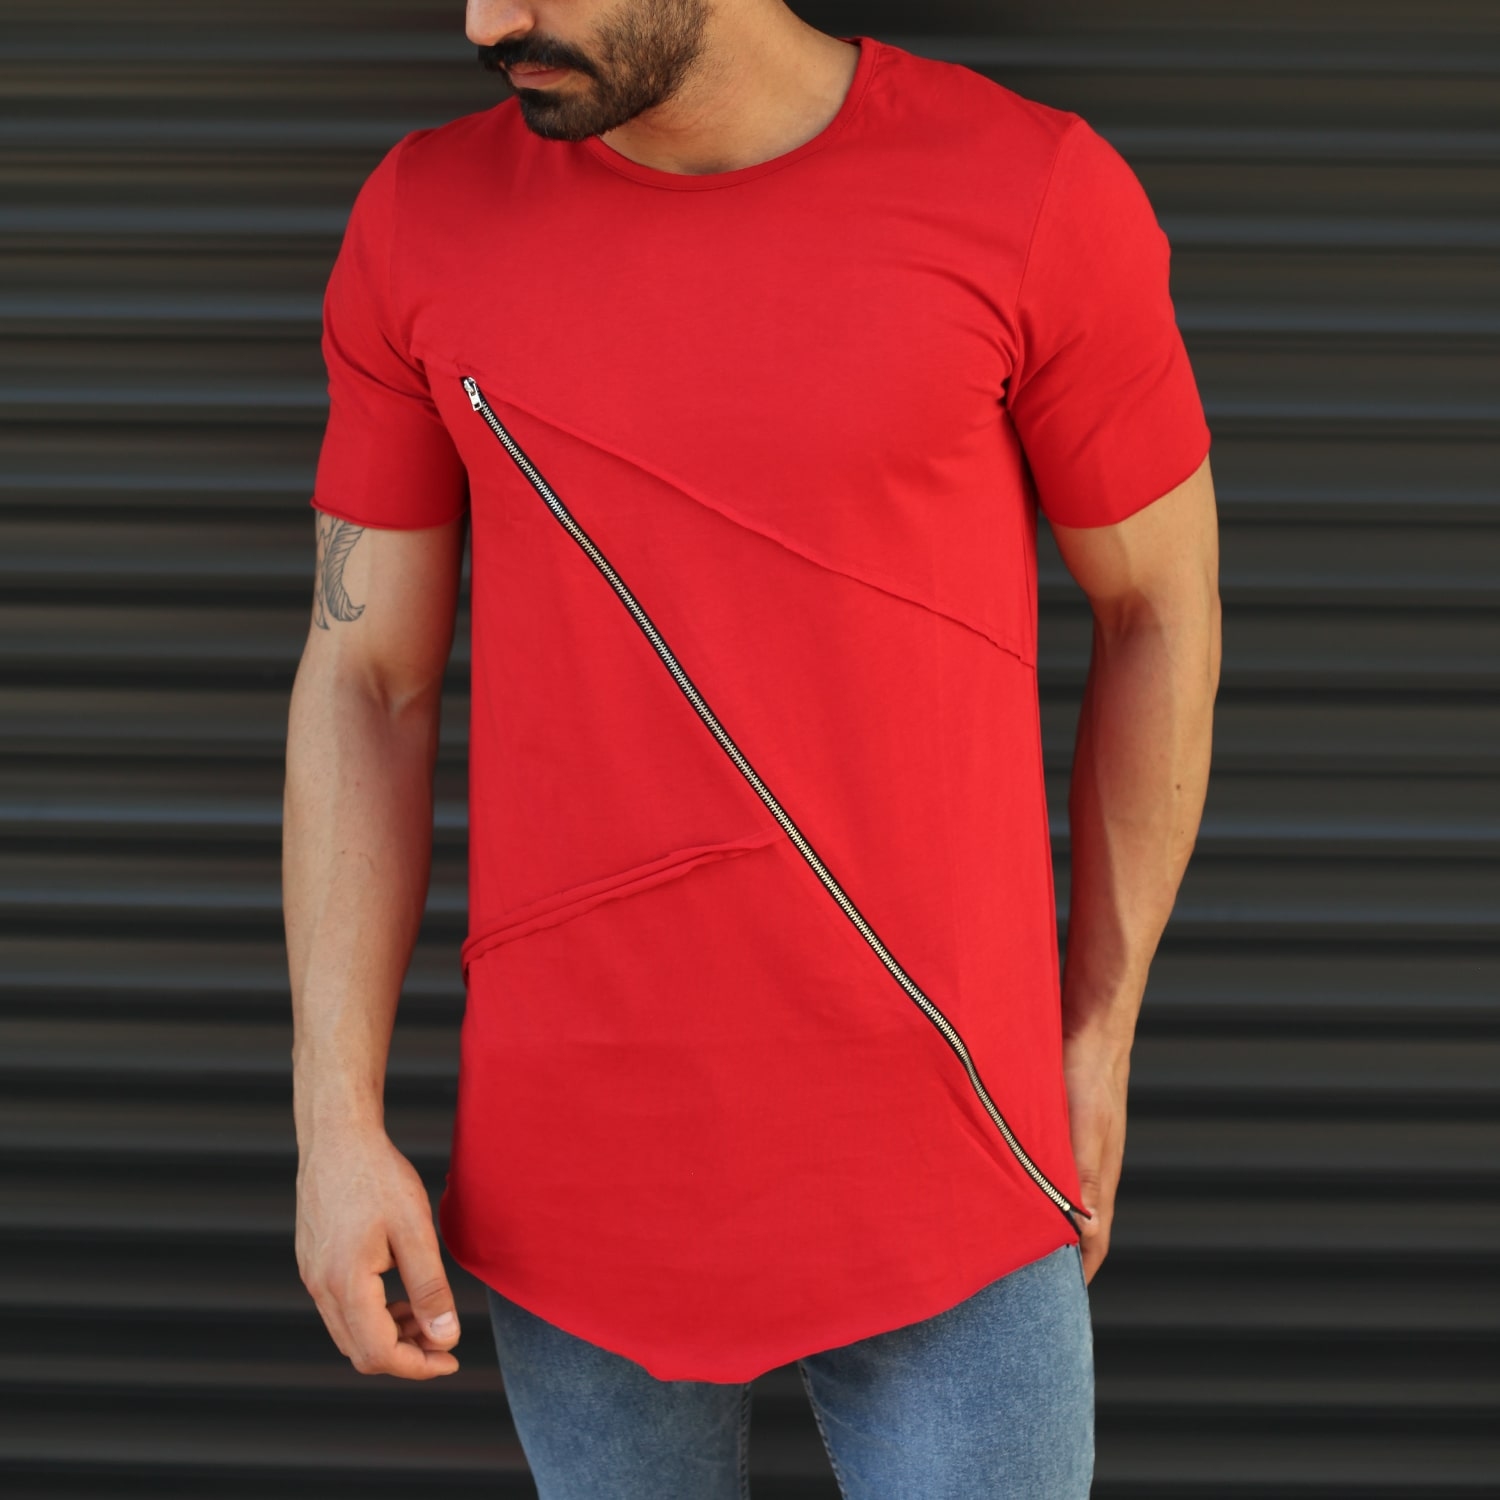 Men's Fitted Cross Zipper Tall T-Shirt Red